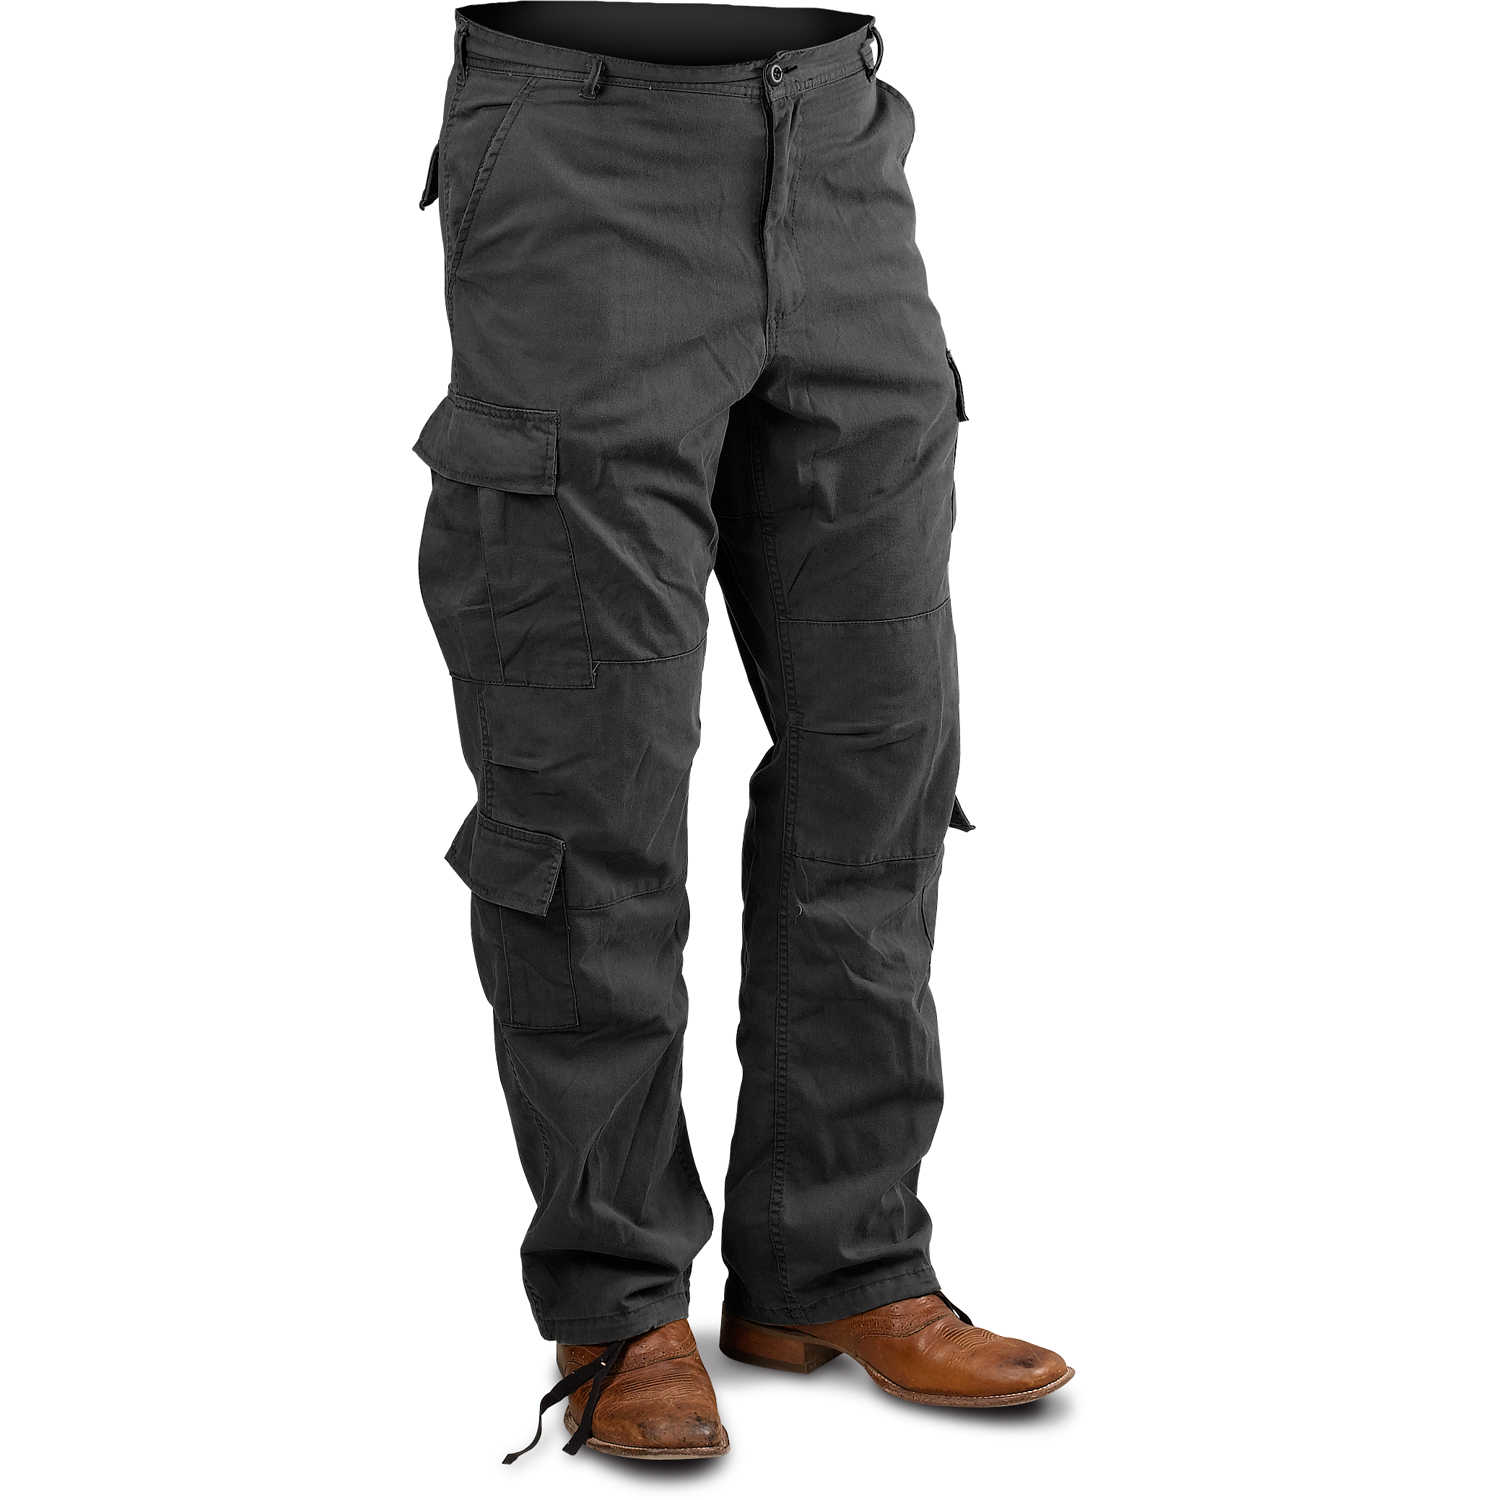 Vintage Paratrooper Cargo Pants Black BDUs/Fatigues 